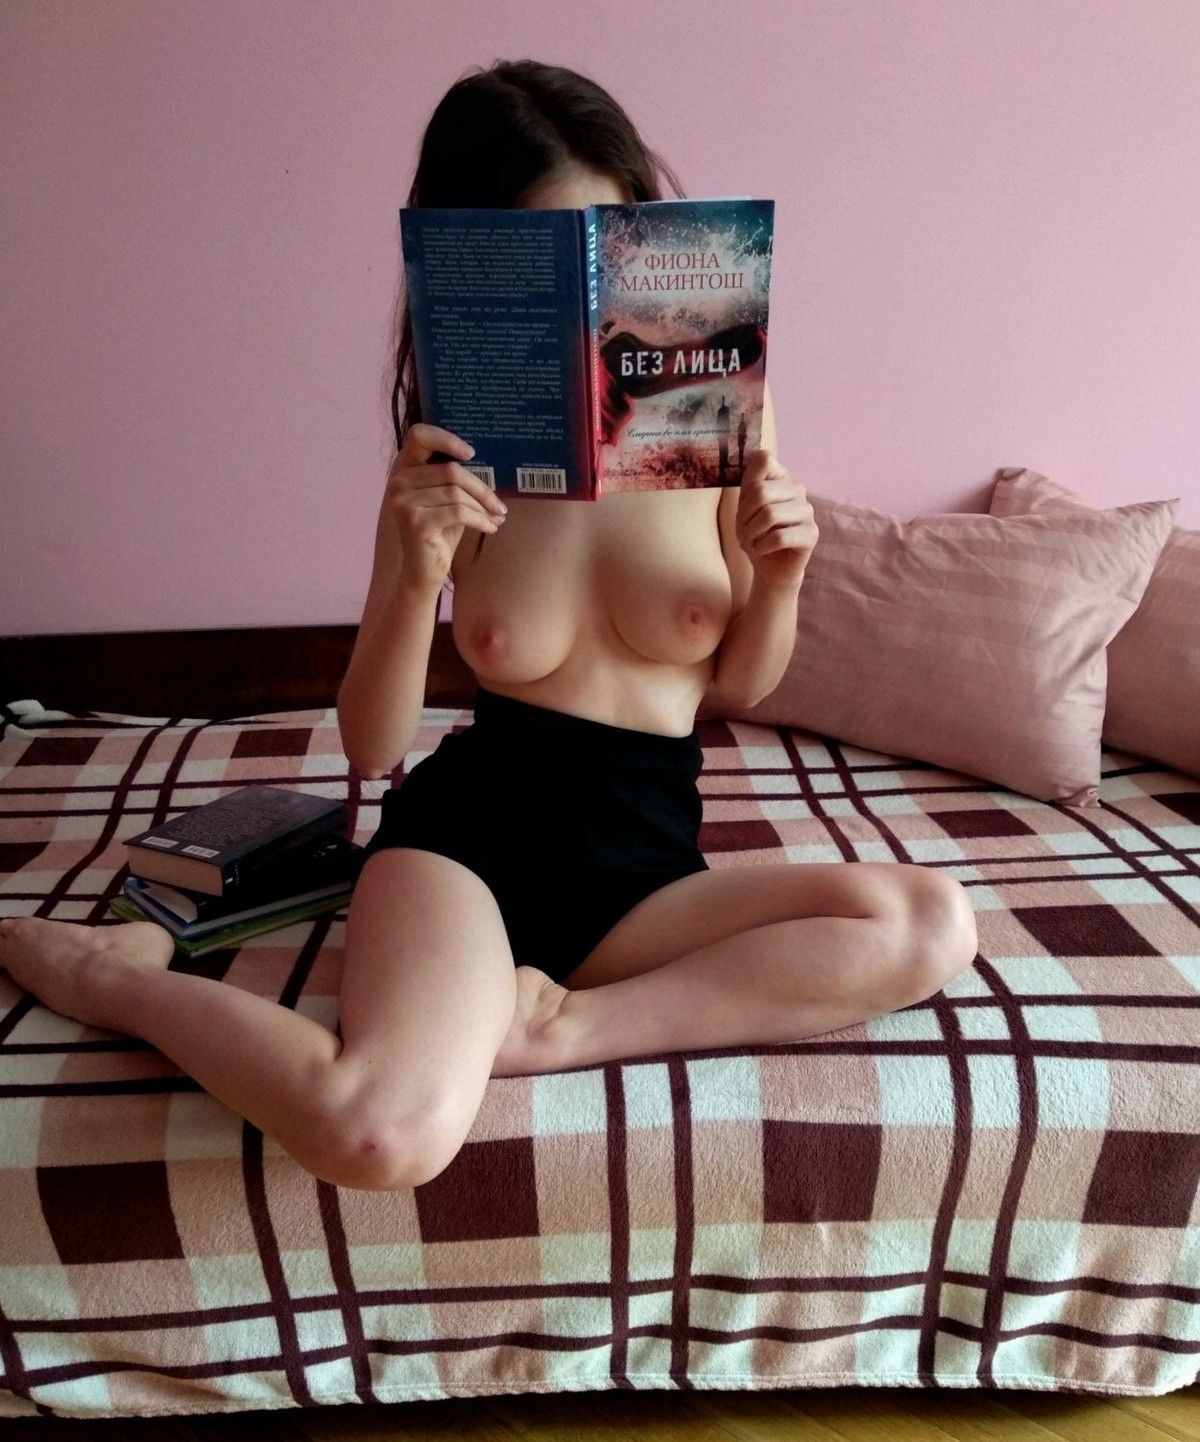 Голые девушки молодые дома порно - Смотреть секс видео на автонагаз55.рф, стр. 5.